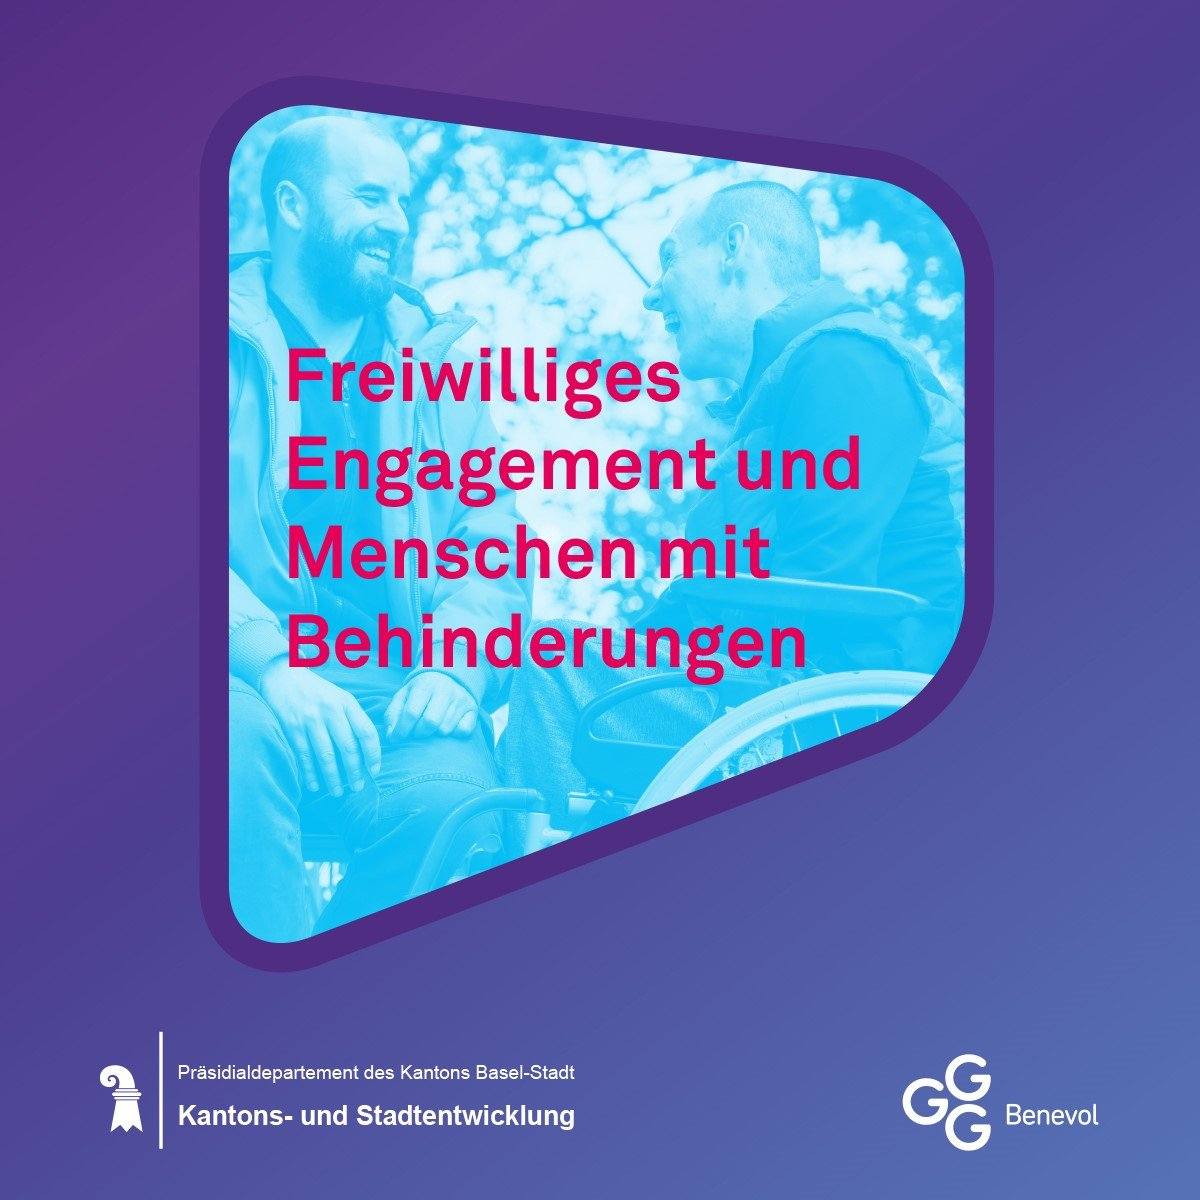 Werbung zum Anlass "Freiwilliges Engagement und Menschen mit Behinderungen" des Präsidialdepartements Basel-Stadt